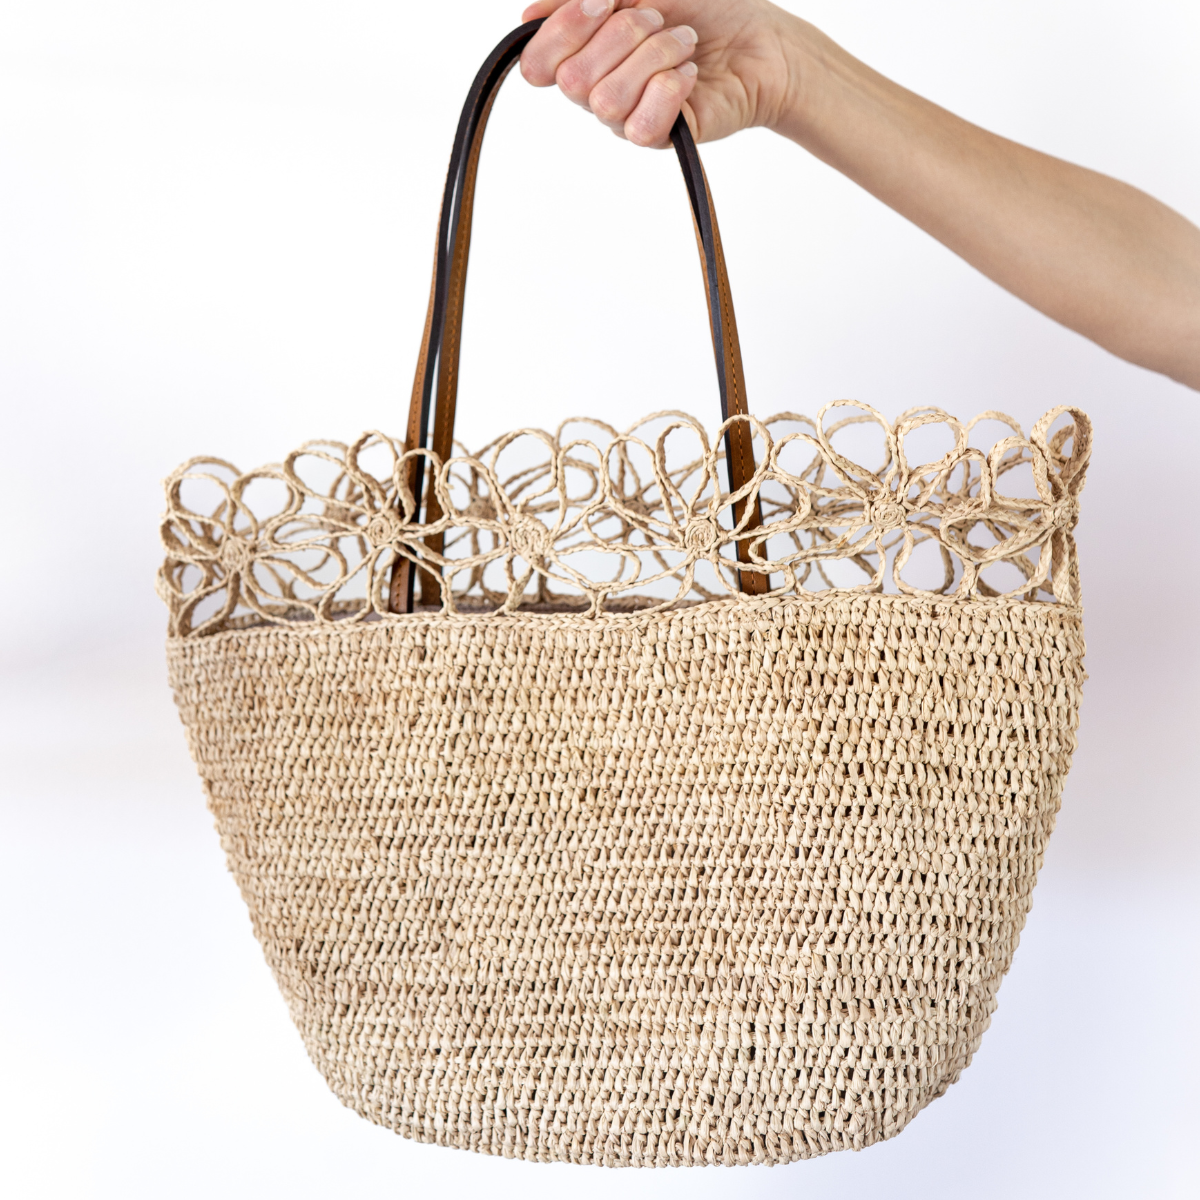 Le sac en raphia Fleur Naturel avec anses en cuir marron est l'accessoire incontournable pour toutes les amatrices de mode qui recherchent à la fois élégance et originalité.